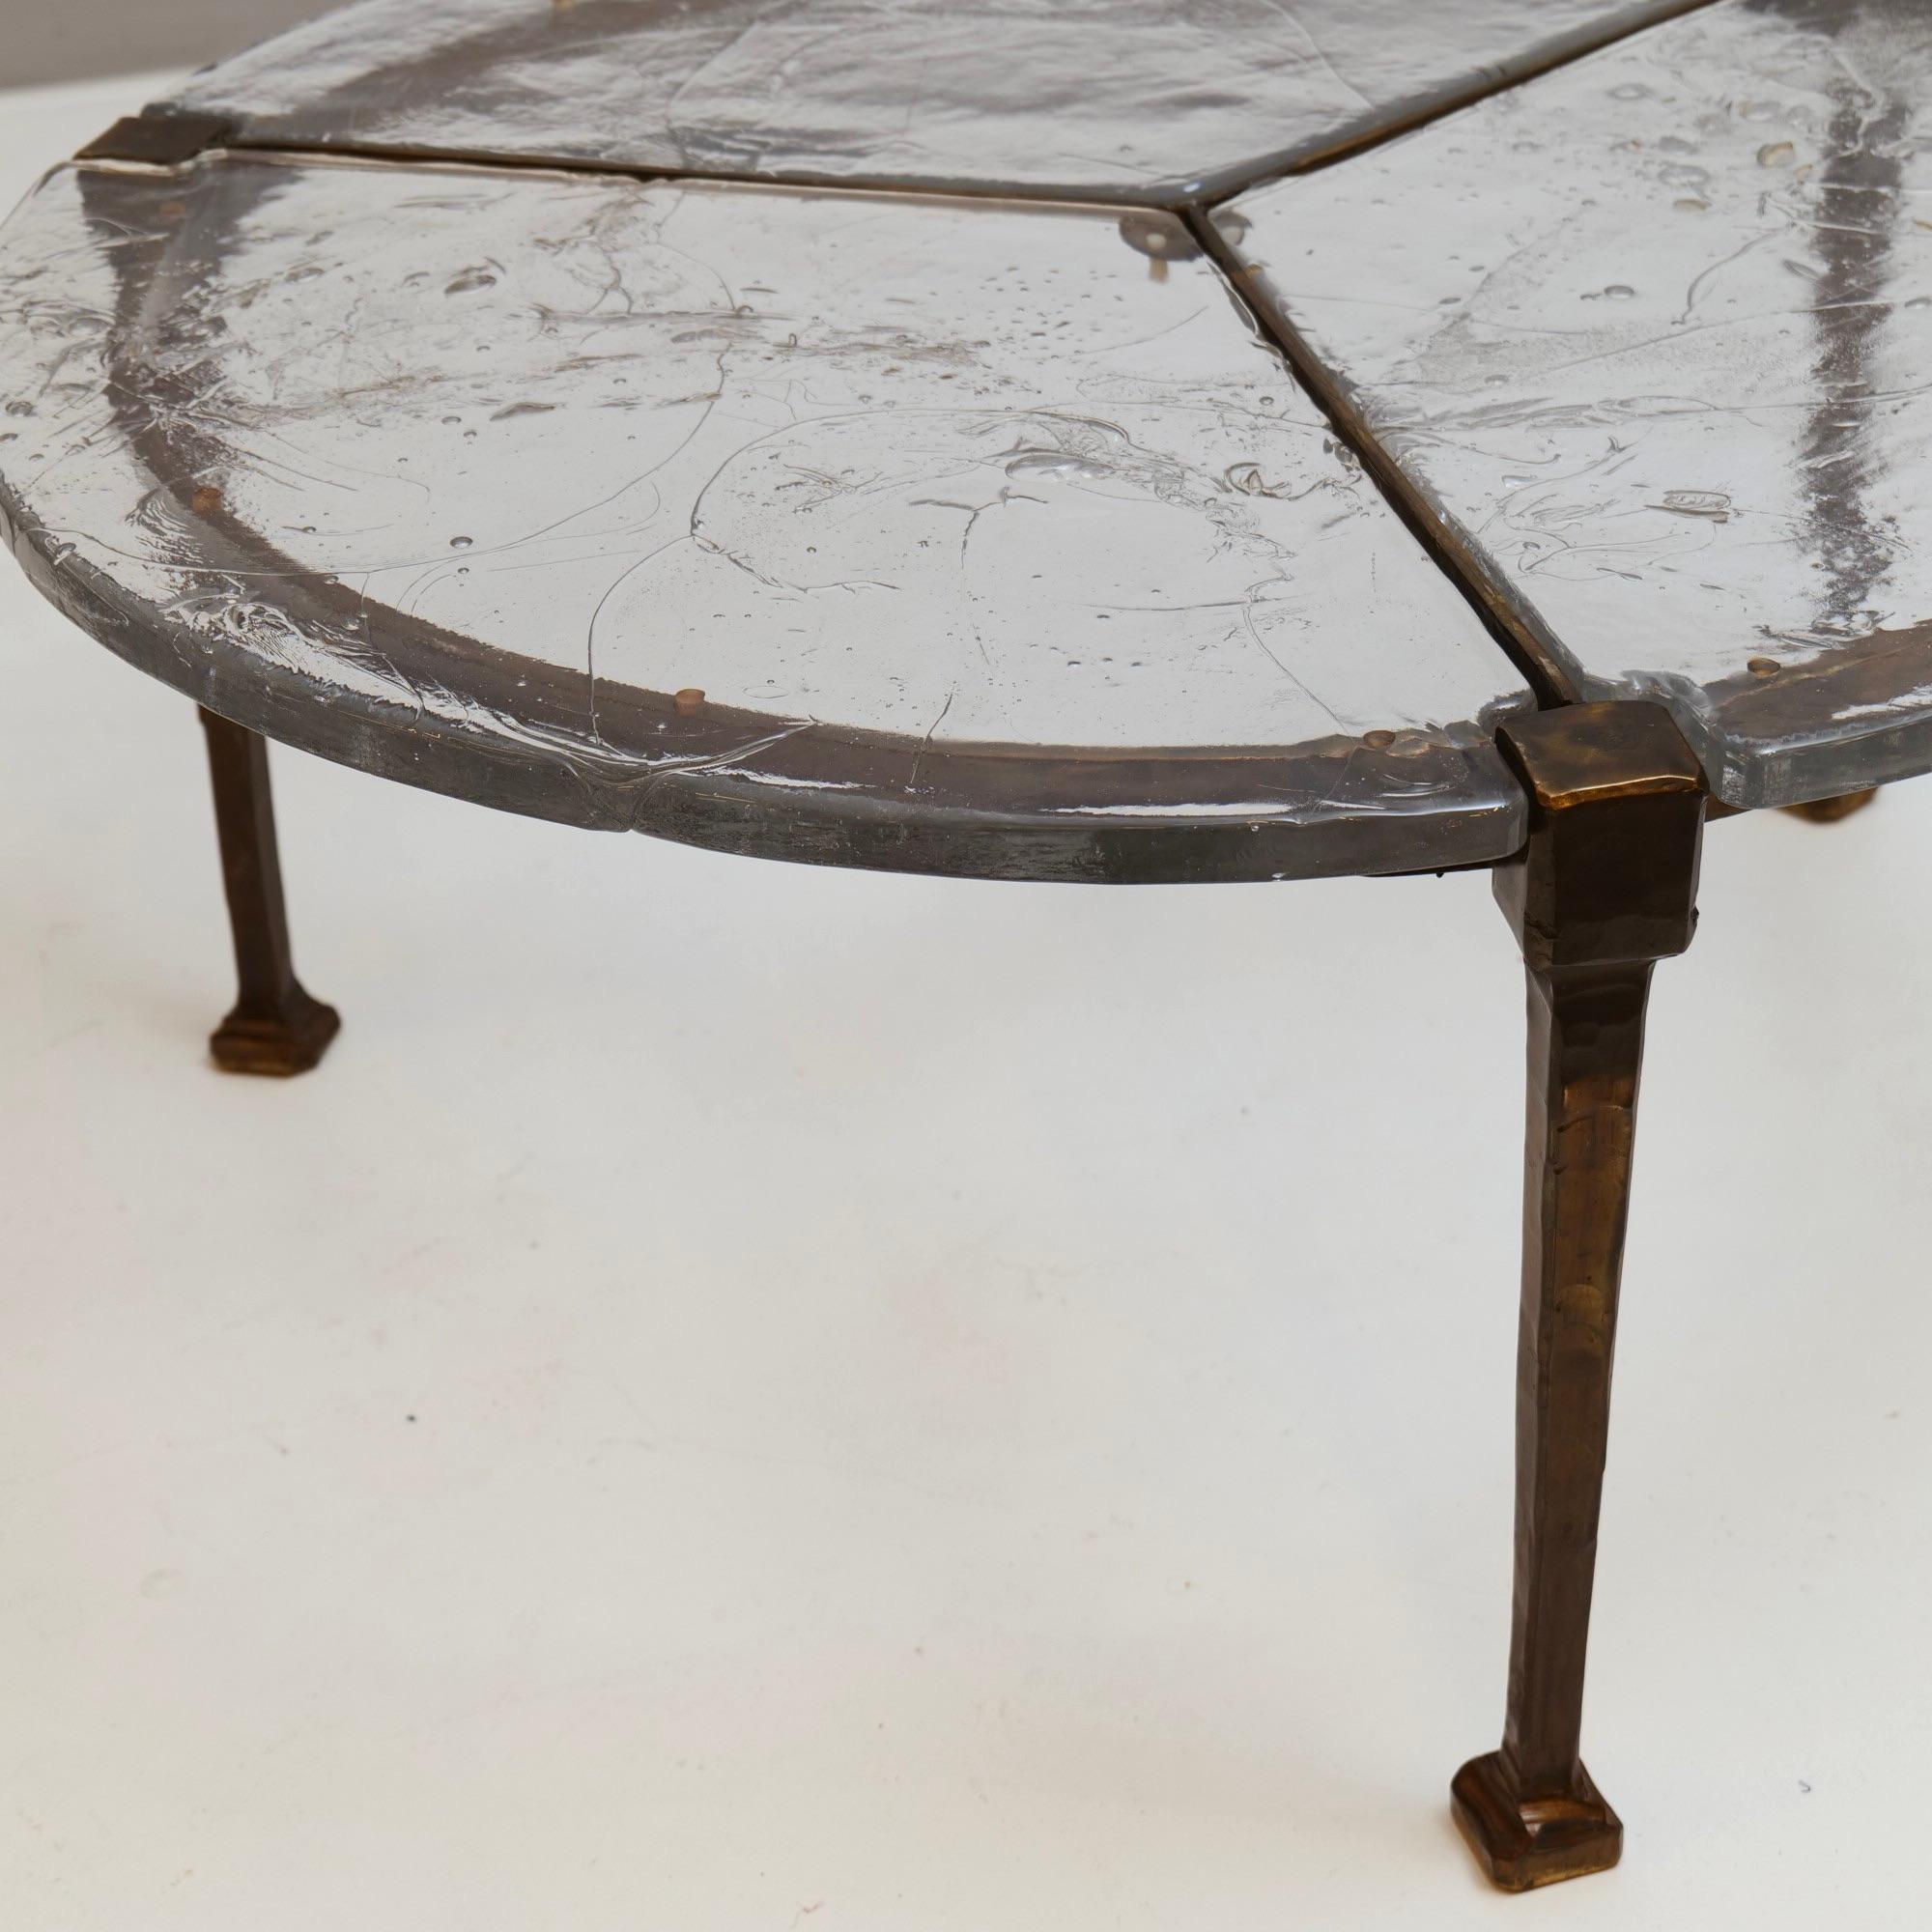 Geschmiedeter Tisch aus Bronze und Glas von Lothar Klute – 1980er Jahre (Brutalismus)